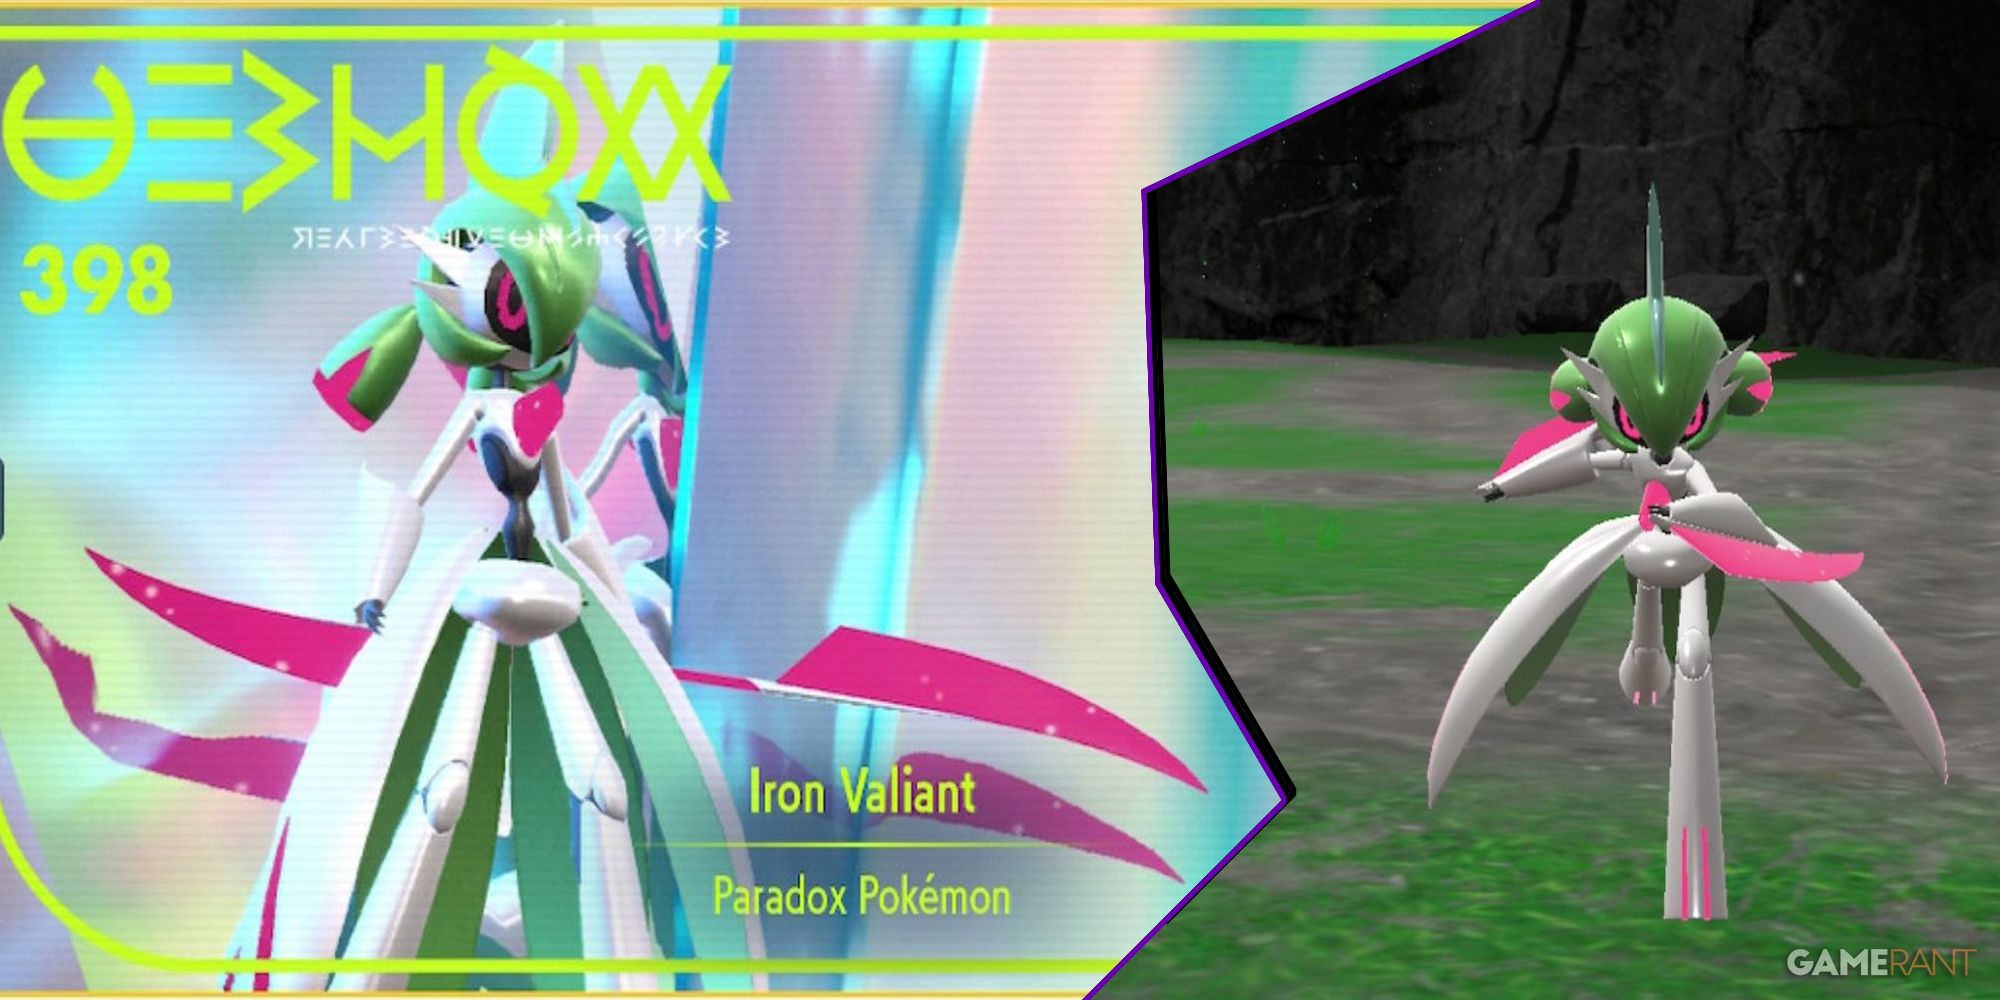 Iron Valiant Shiny Hunt (With Shiny Charm) - Pokemon Violet 